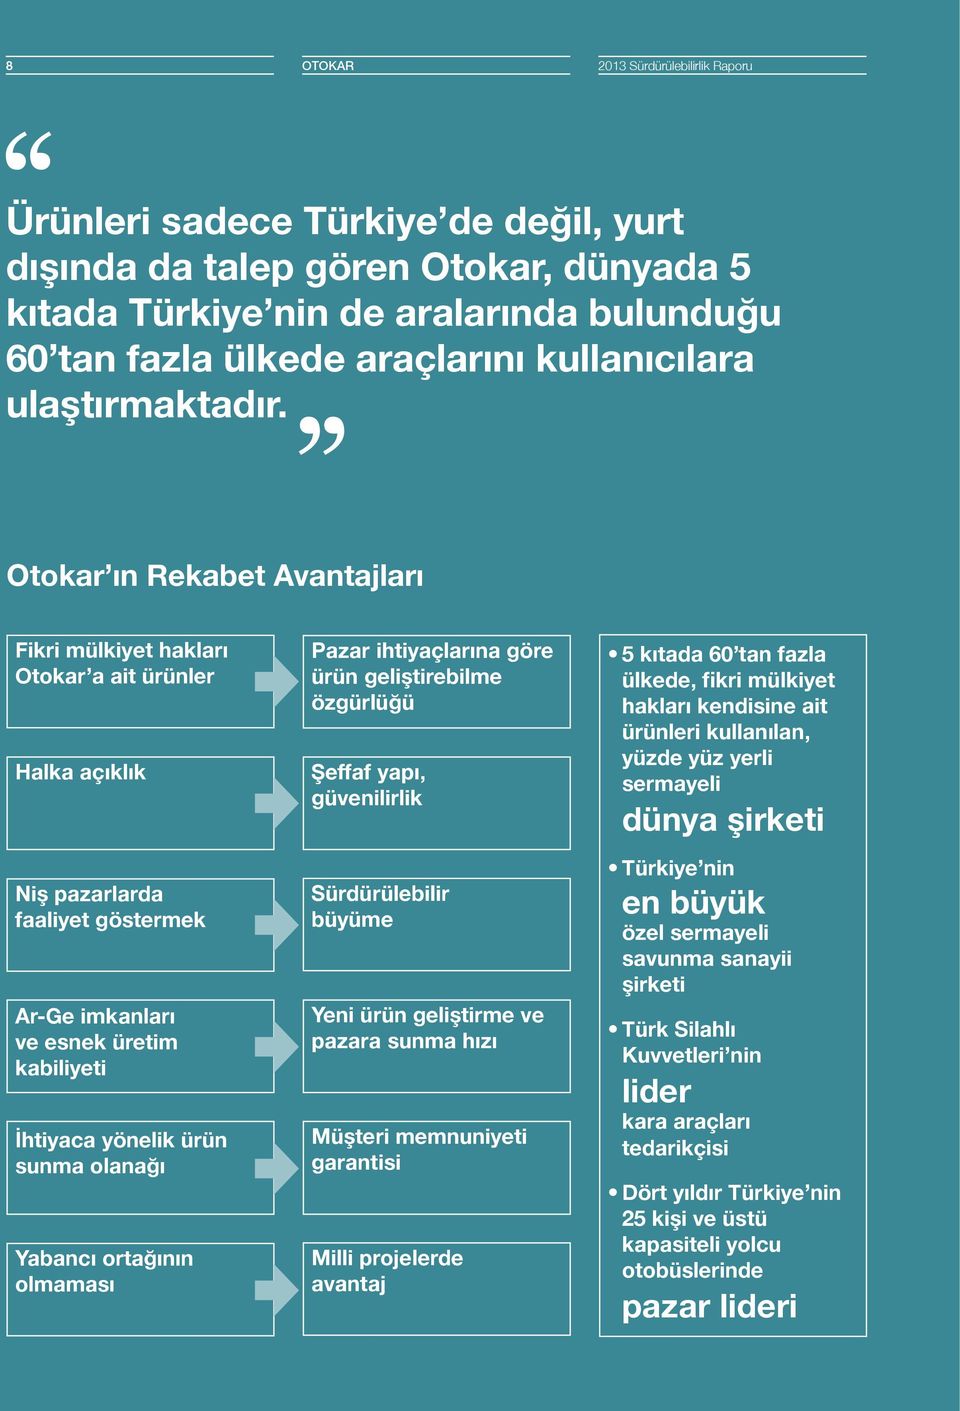 Otokar ın Rekabet Avantajları Fikri mülkiyet hakları Otokar a ait ürünler Halka açıklık Niş pazarlarda faaliyet göstermek Ar-Ge imkanları ve esnek üretim kabiliyeti İhtiyaca yönelik ürün sunma